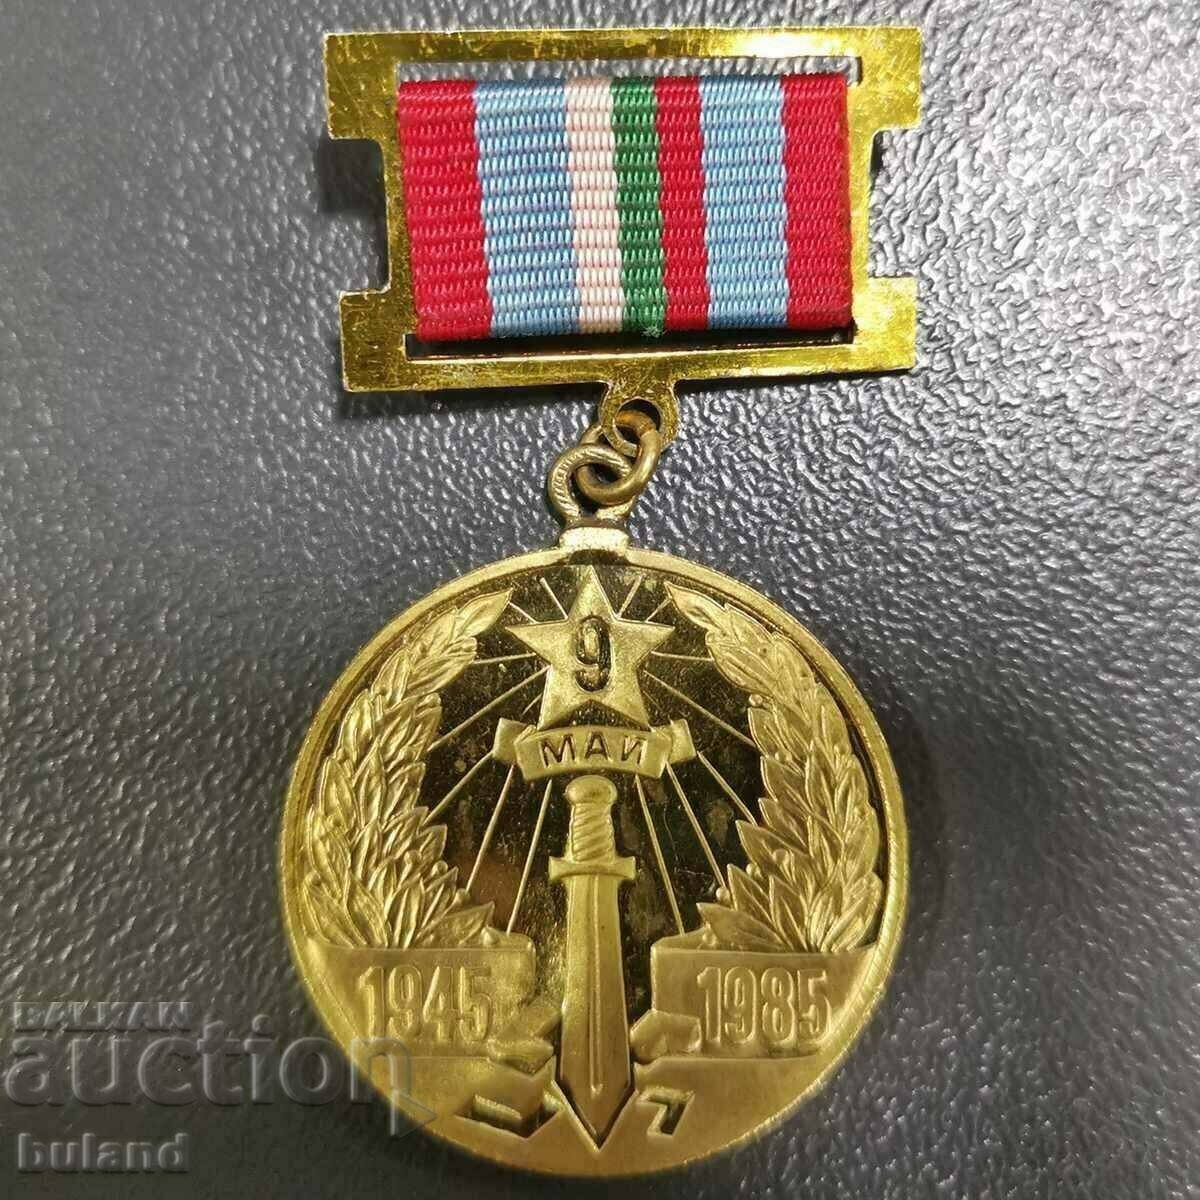 Medalia 40 de ani ai Victoriei asupra fascismului hitlerist 9 mai 1945-1985